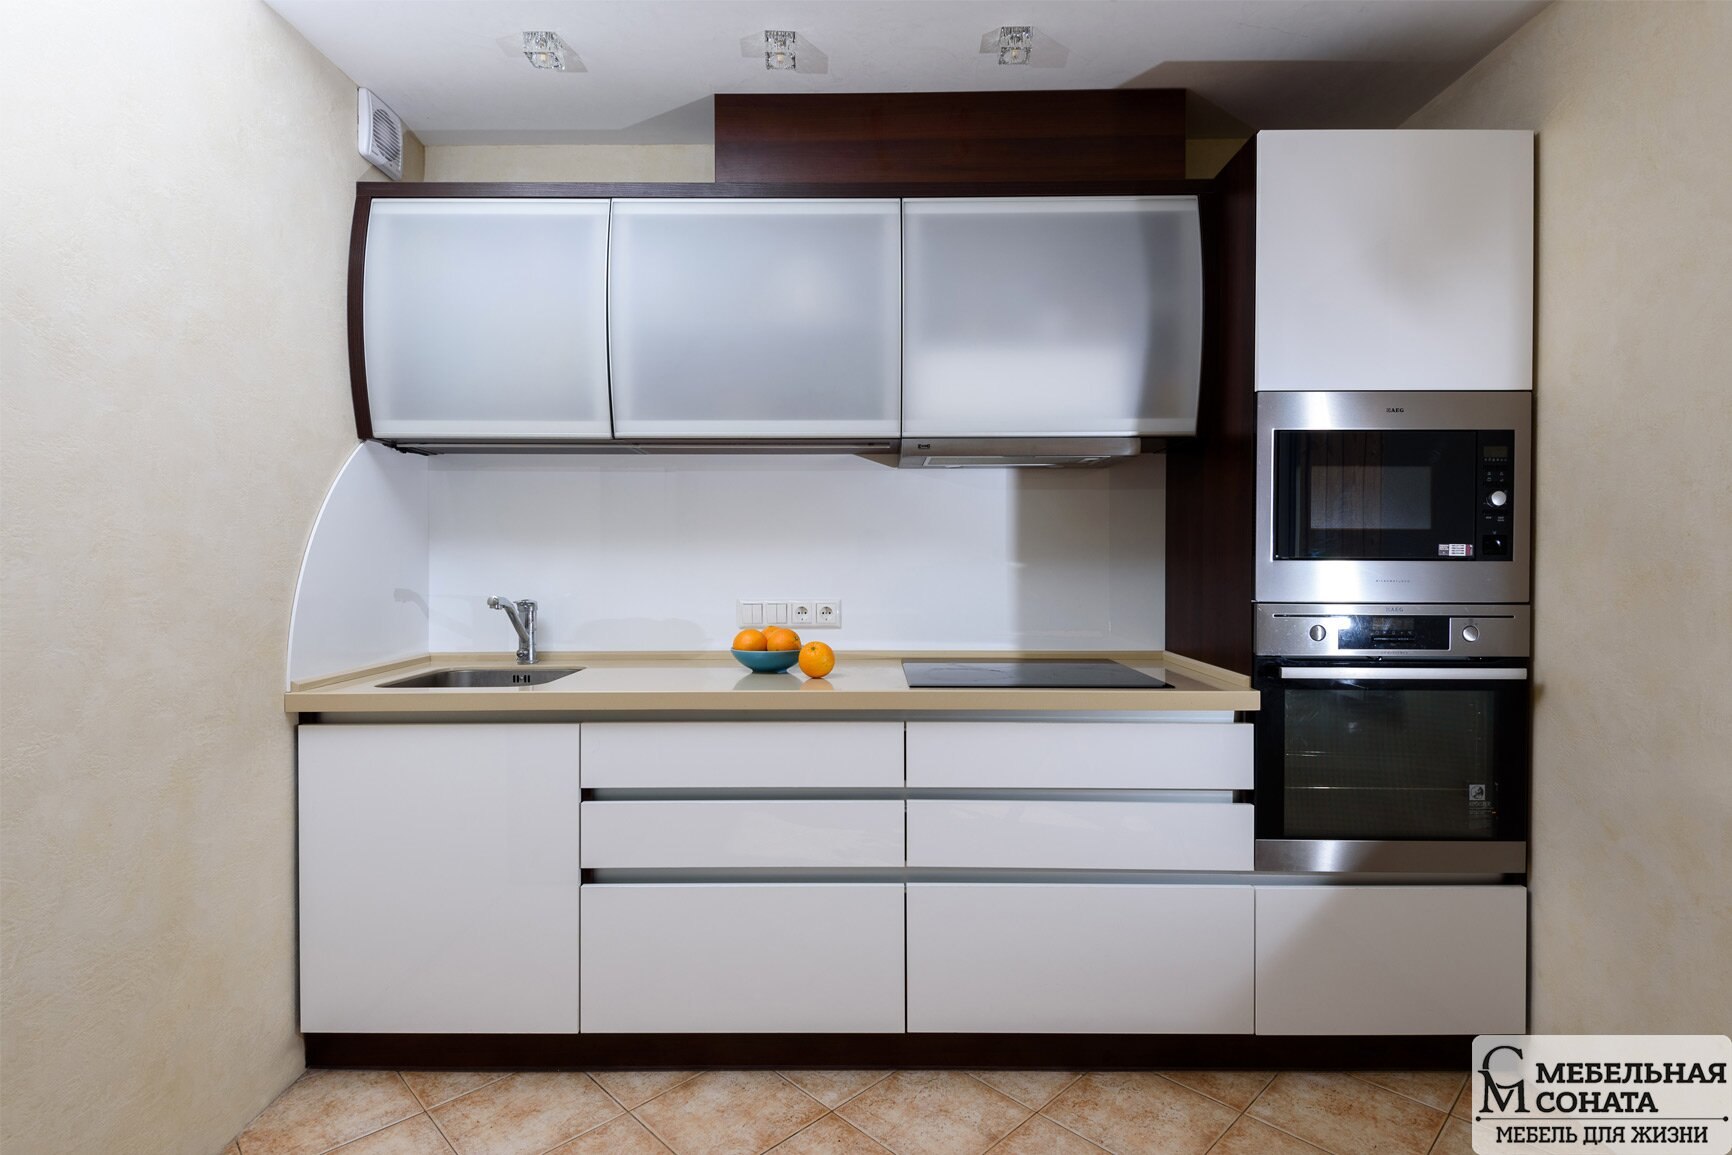 Прямая кухня без холодильника